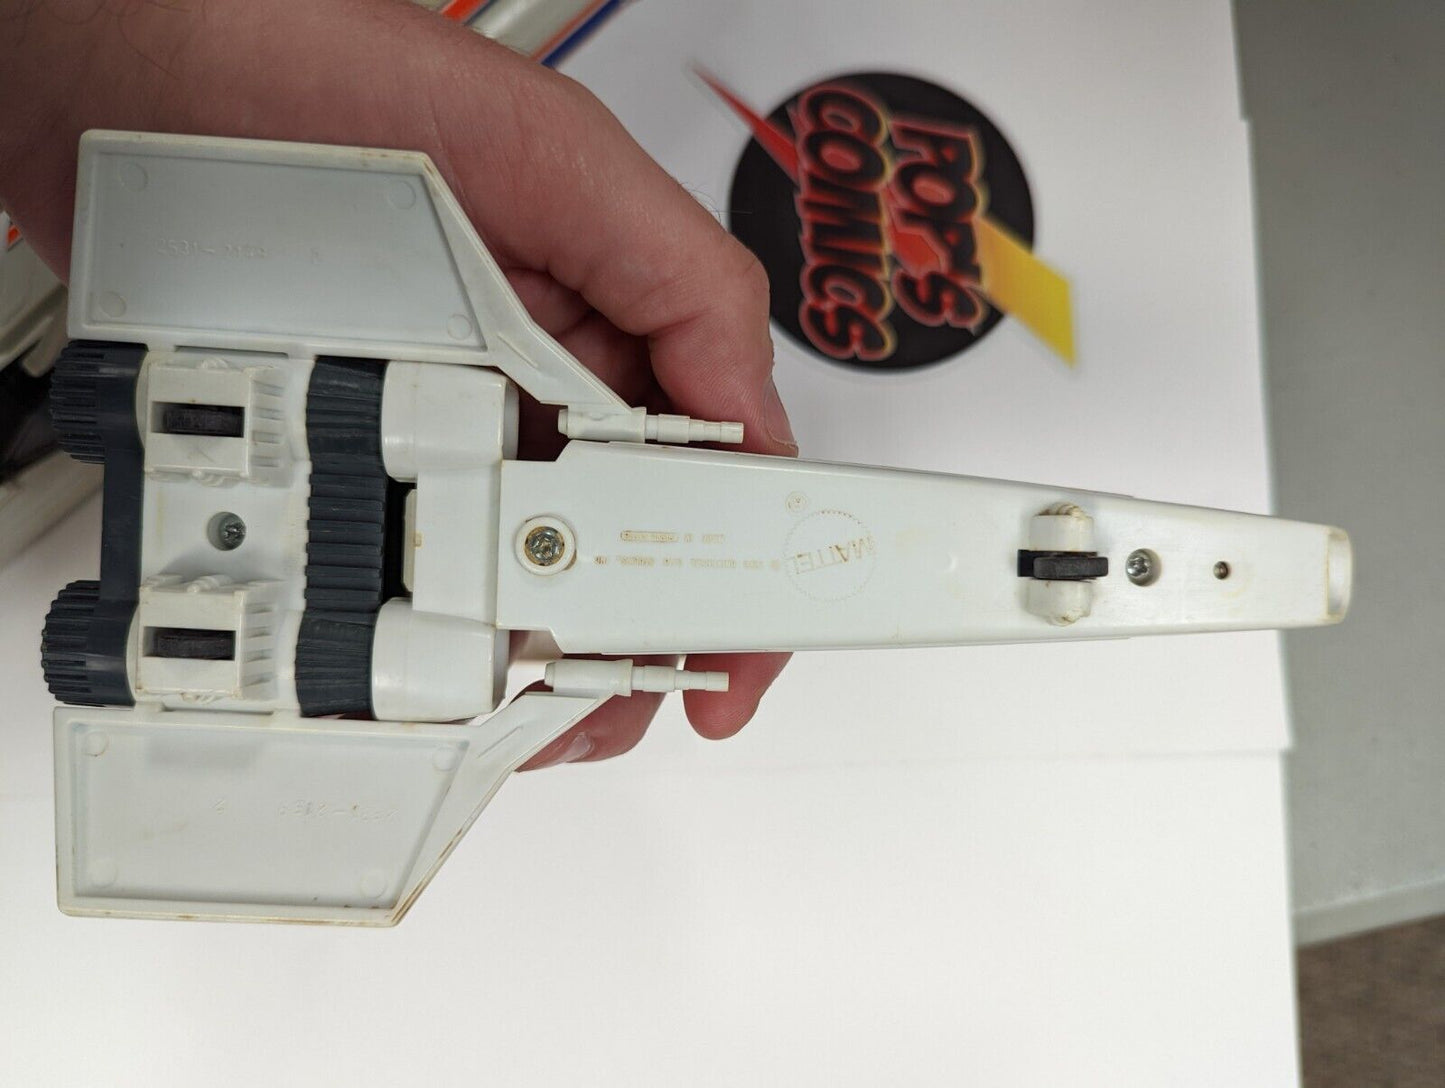 Mattel 1978 Battlestar Galactica Stellar Probe Colonial Viper Firing Missiles